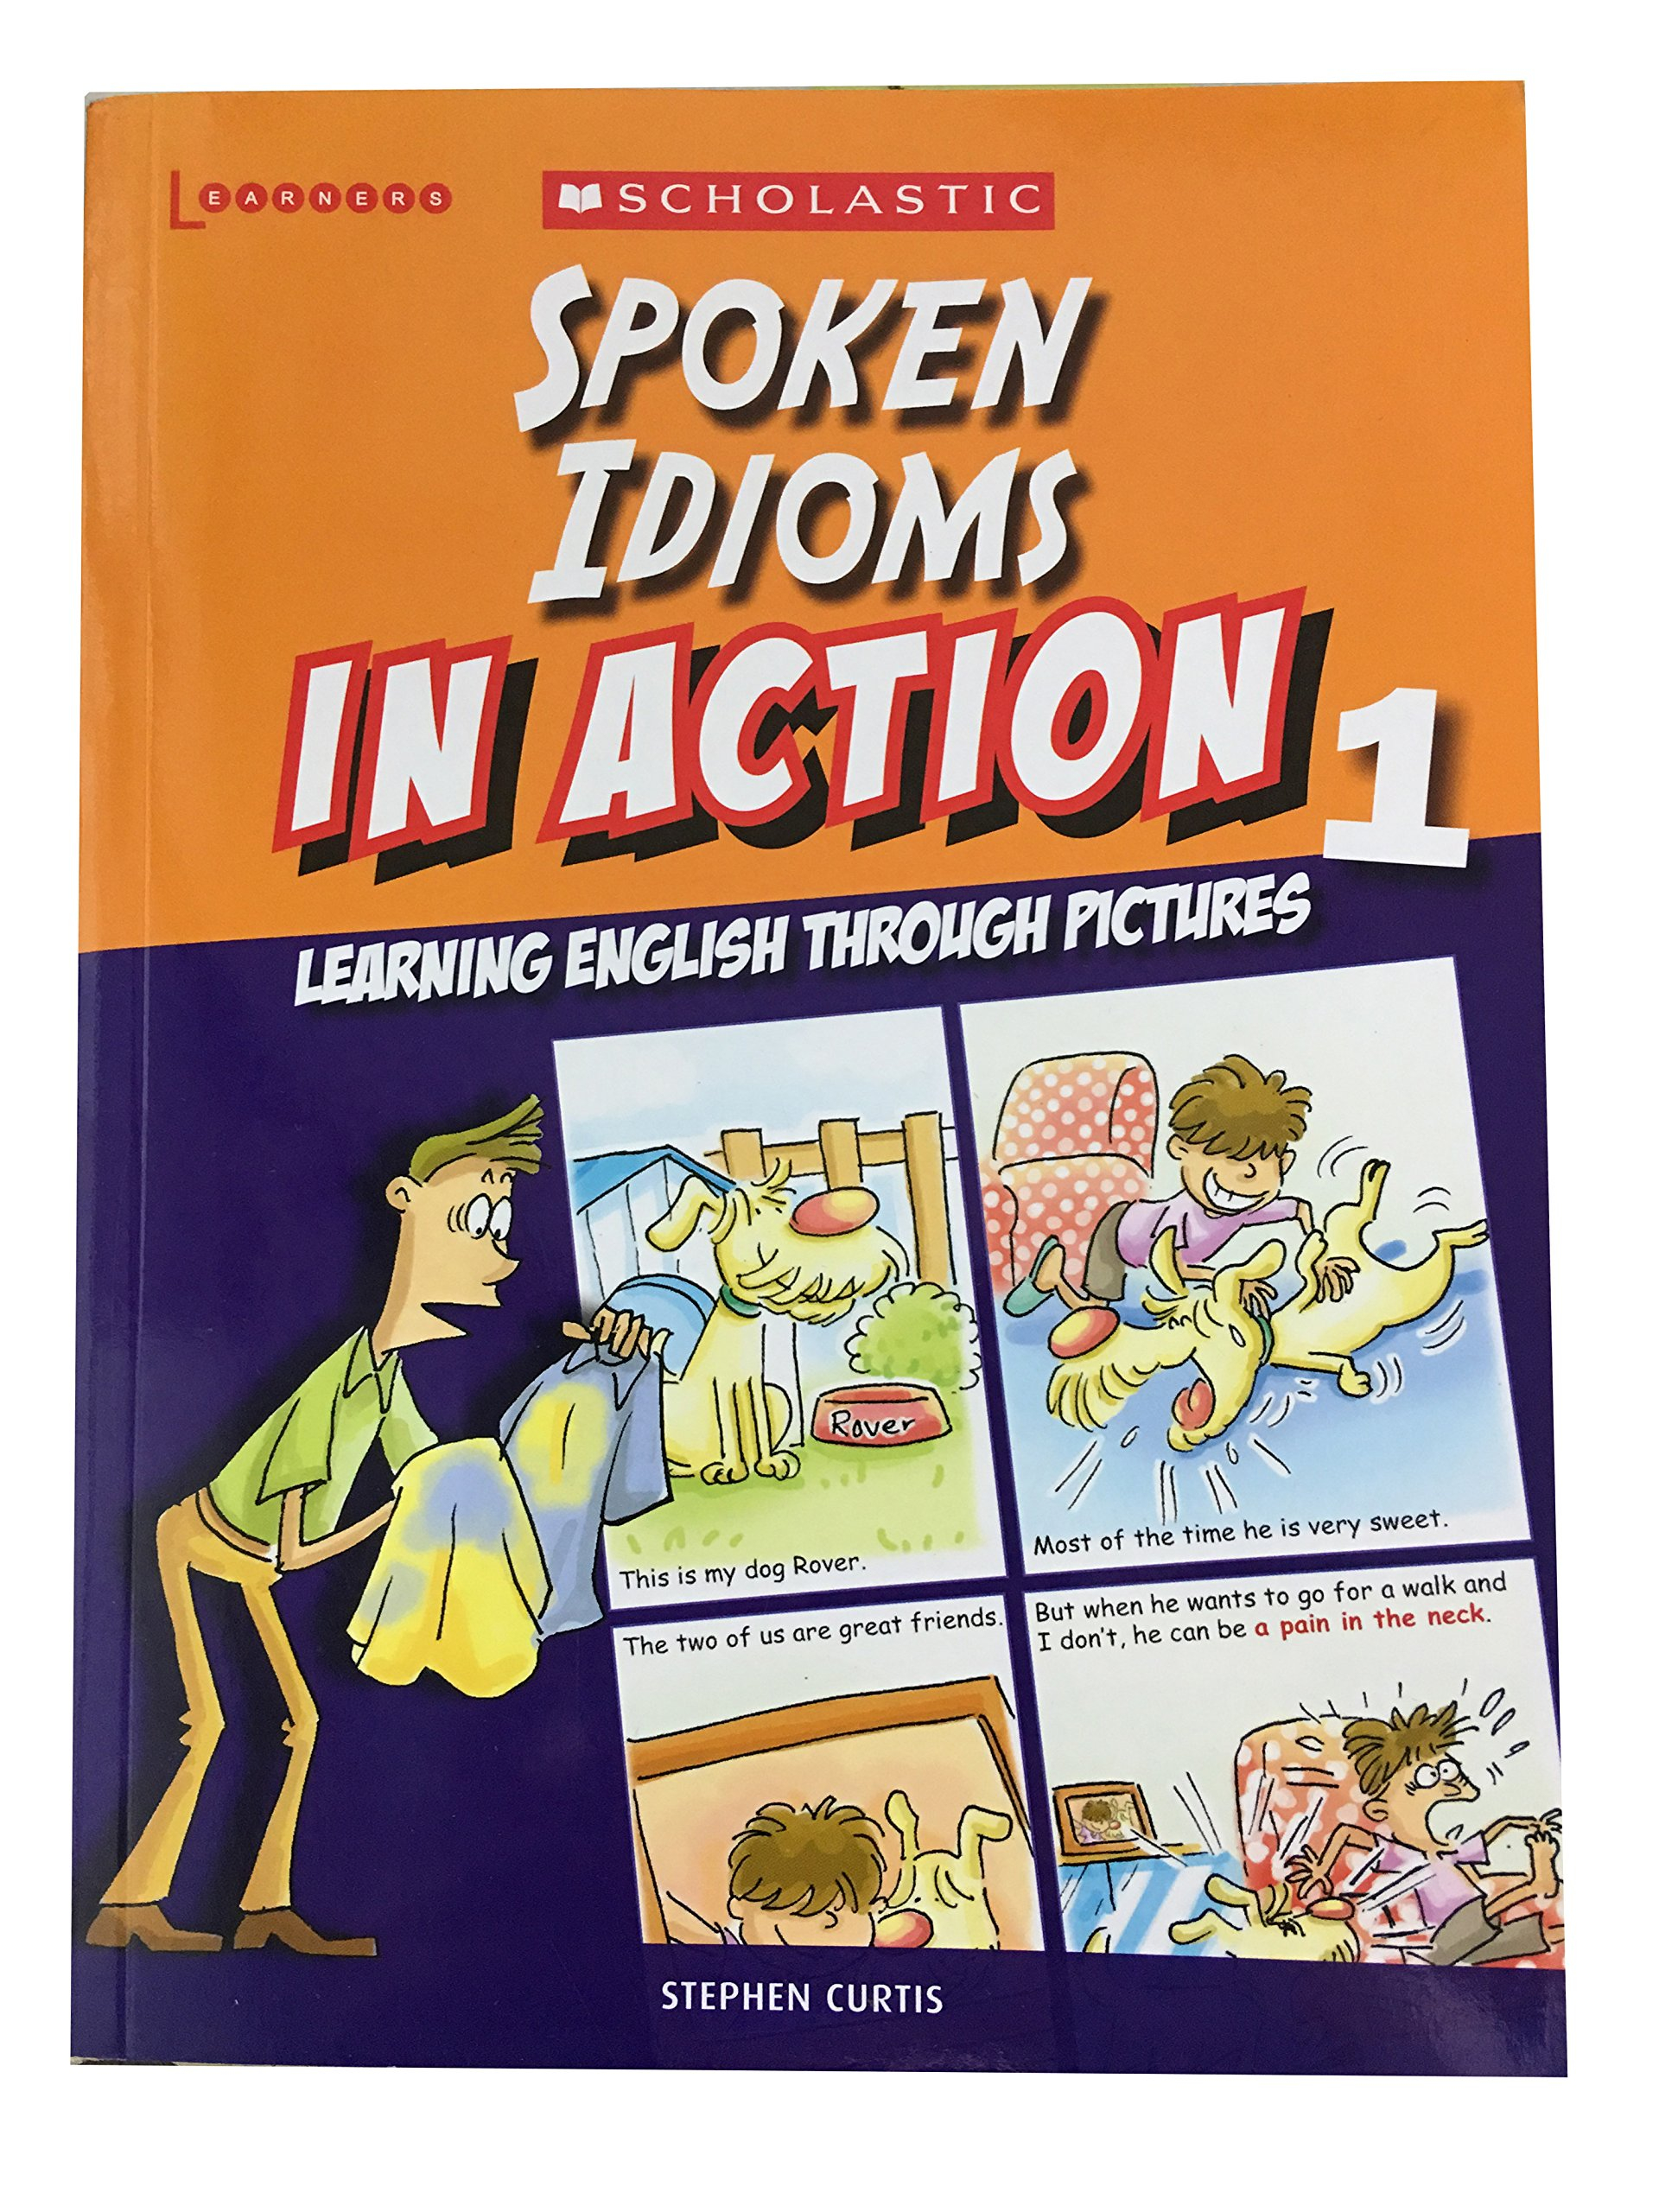 Speak idiom. Spoken idioms. Idioms in Action. Idioms pdf. Scholastic in Action.